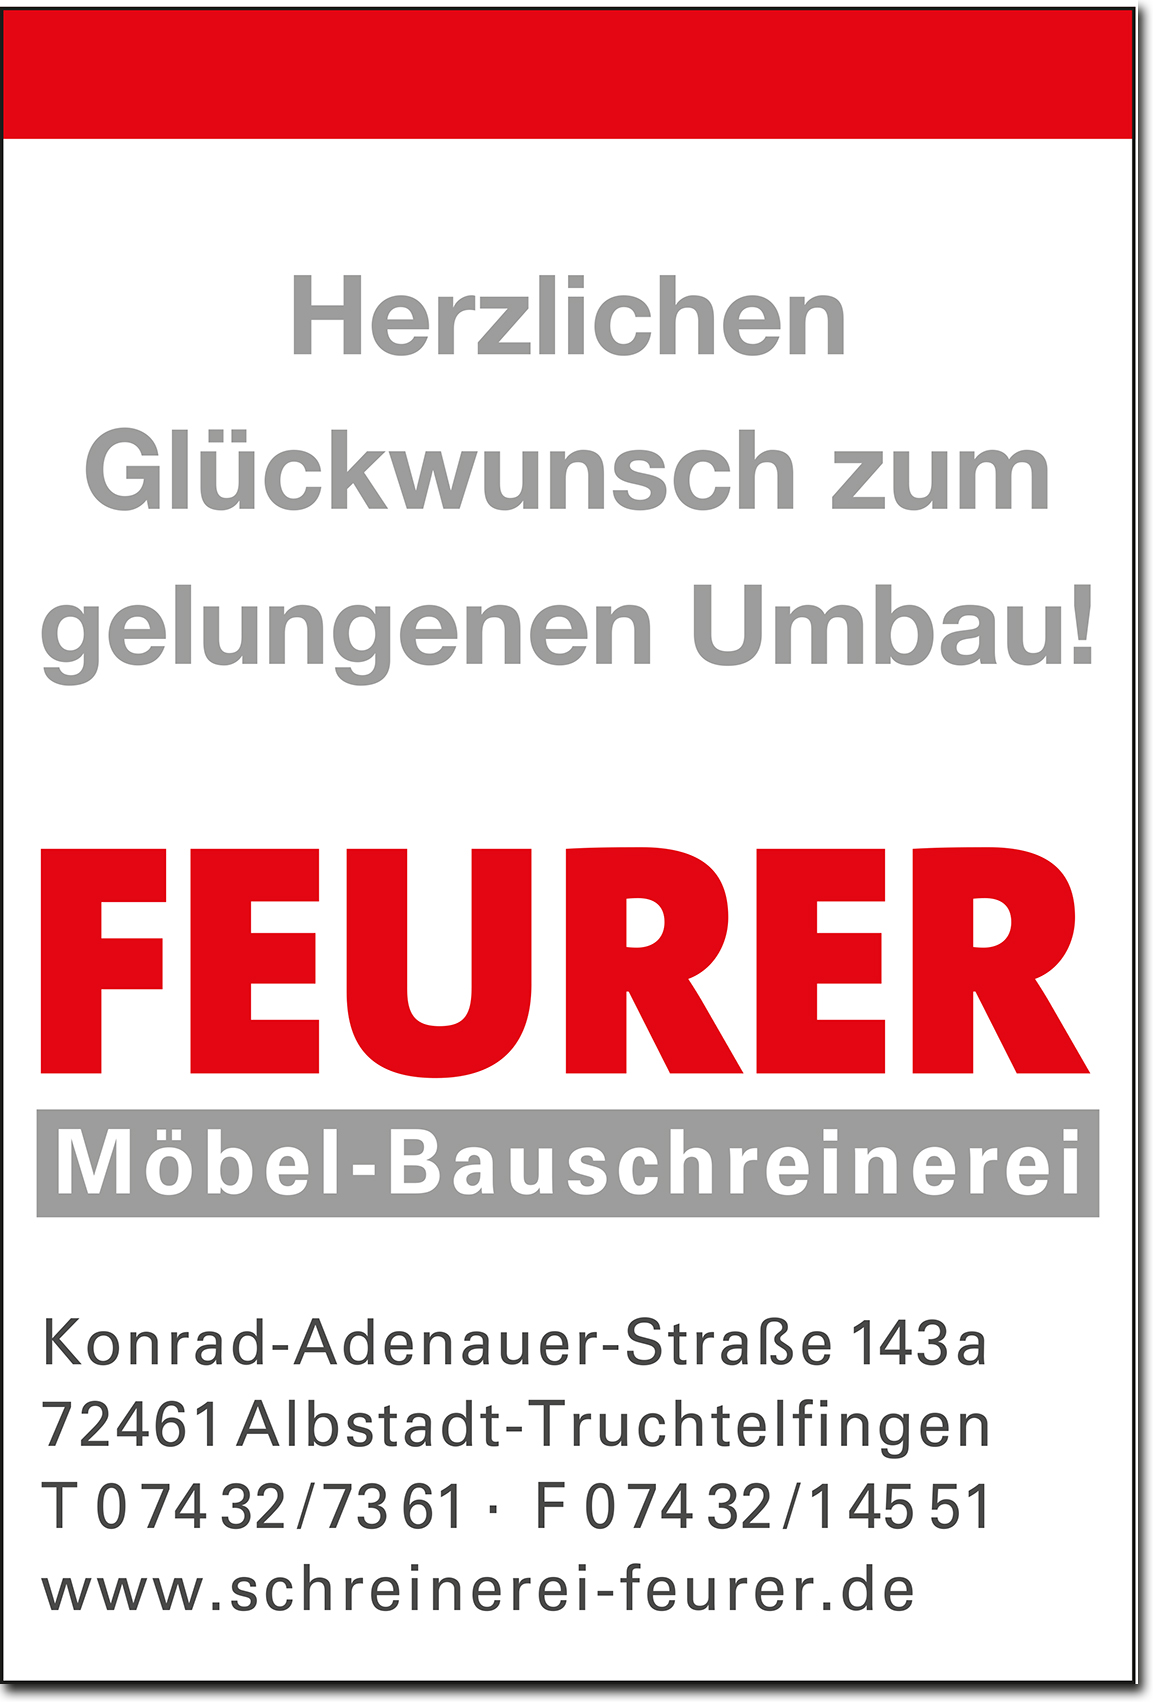 Feurer GmbH